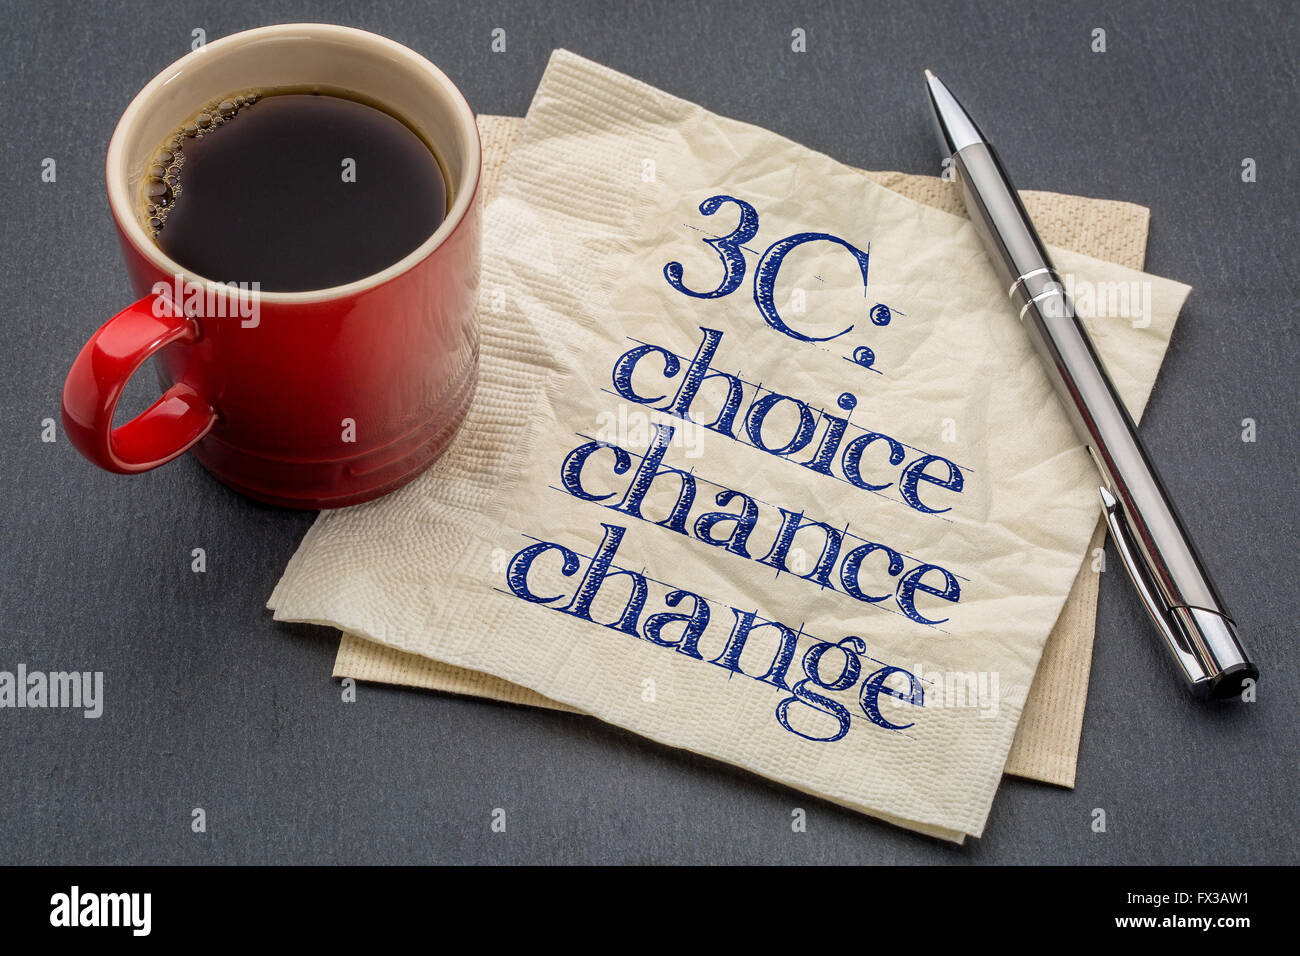 3C Konzept - Wahl, Chance und Veränderung-Handschrift auf einer Serviette mit Tasse Kaffee vor grauen Schiefer Stein Hintergrund Stockfoto